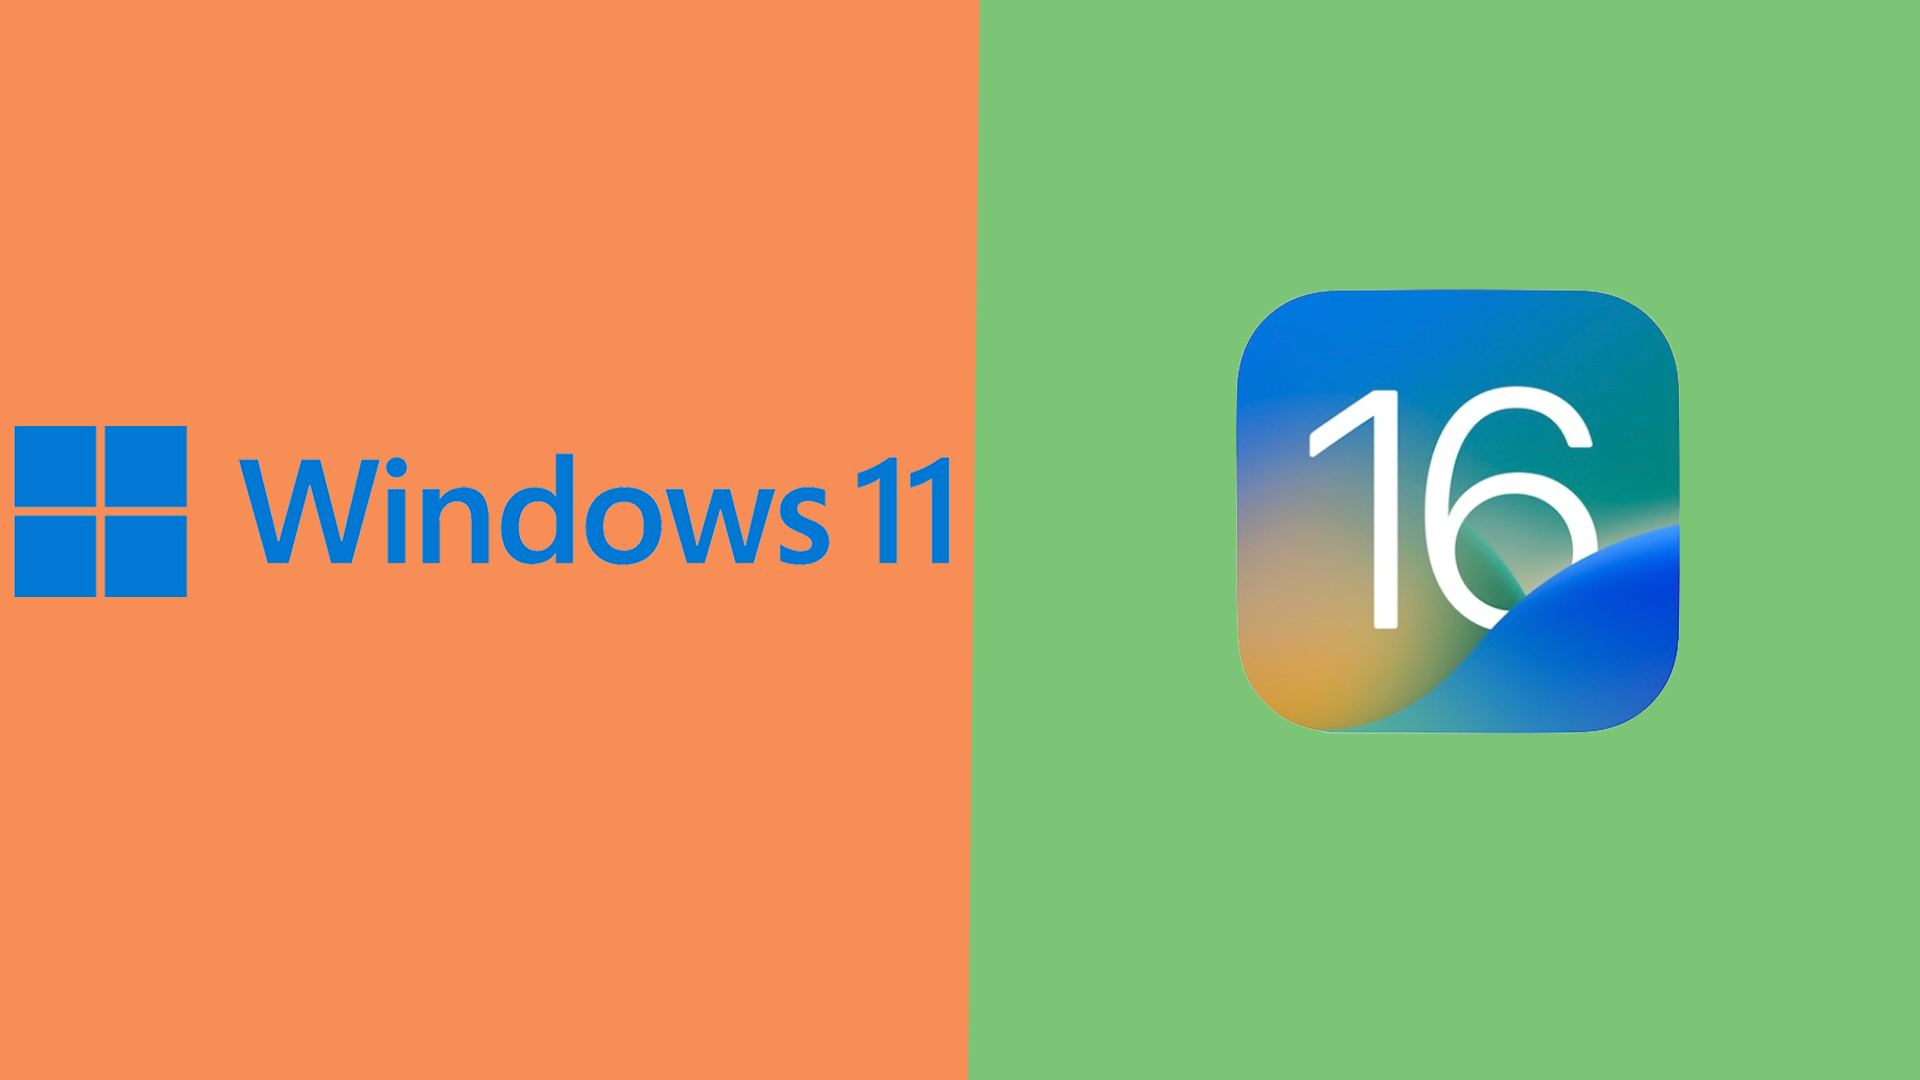 Улучшения специальных возможностей в Windows 11 и iOS 16 обещают будущее